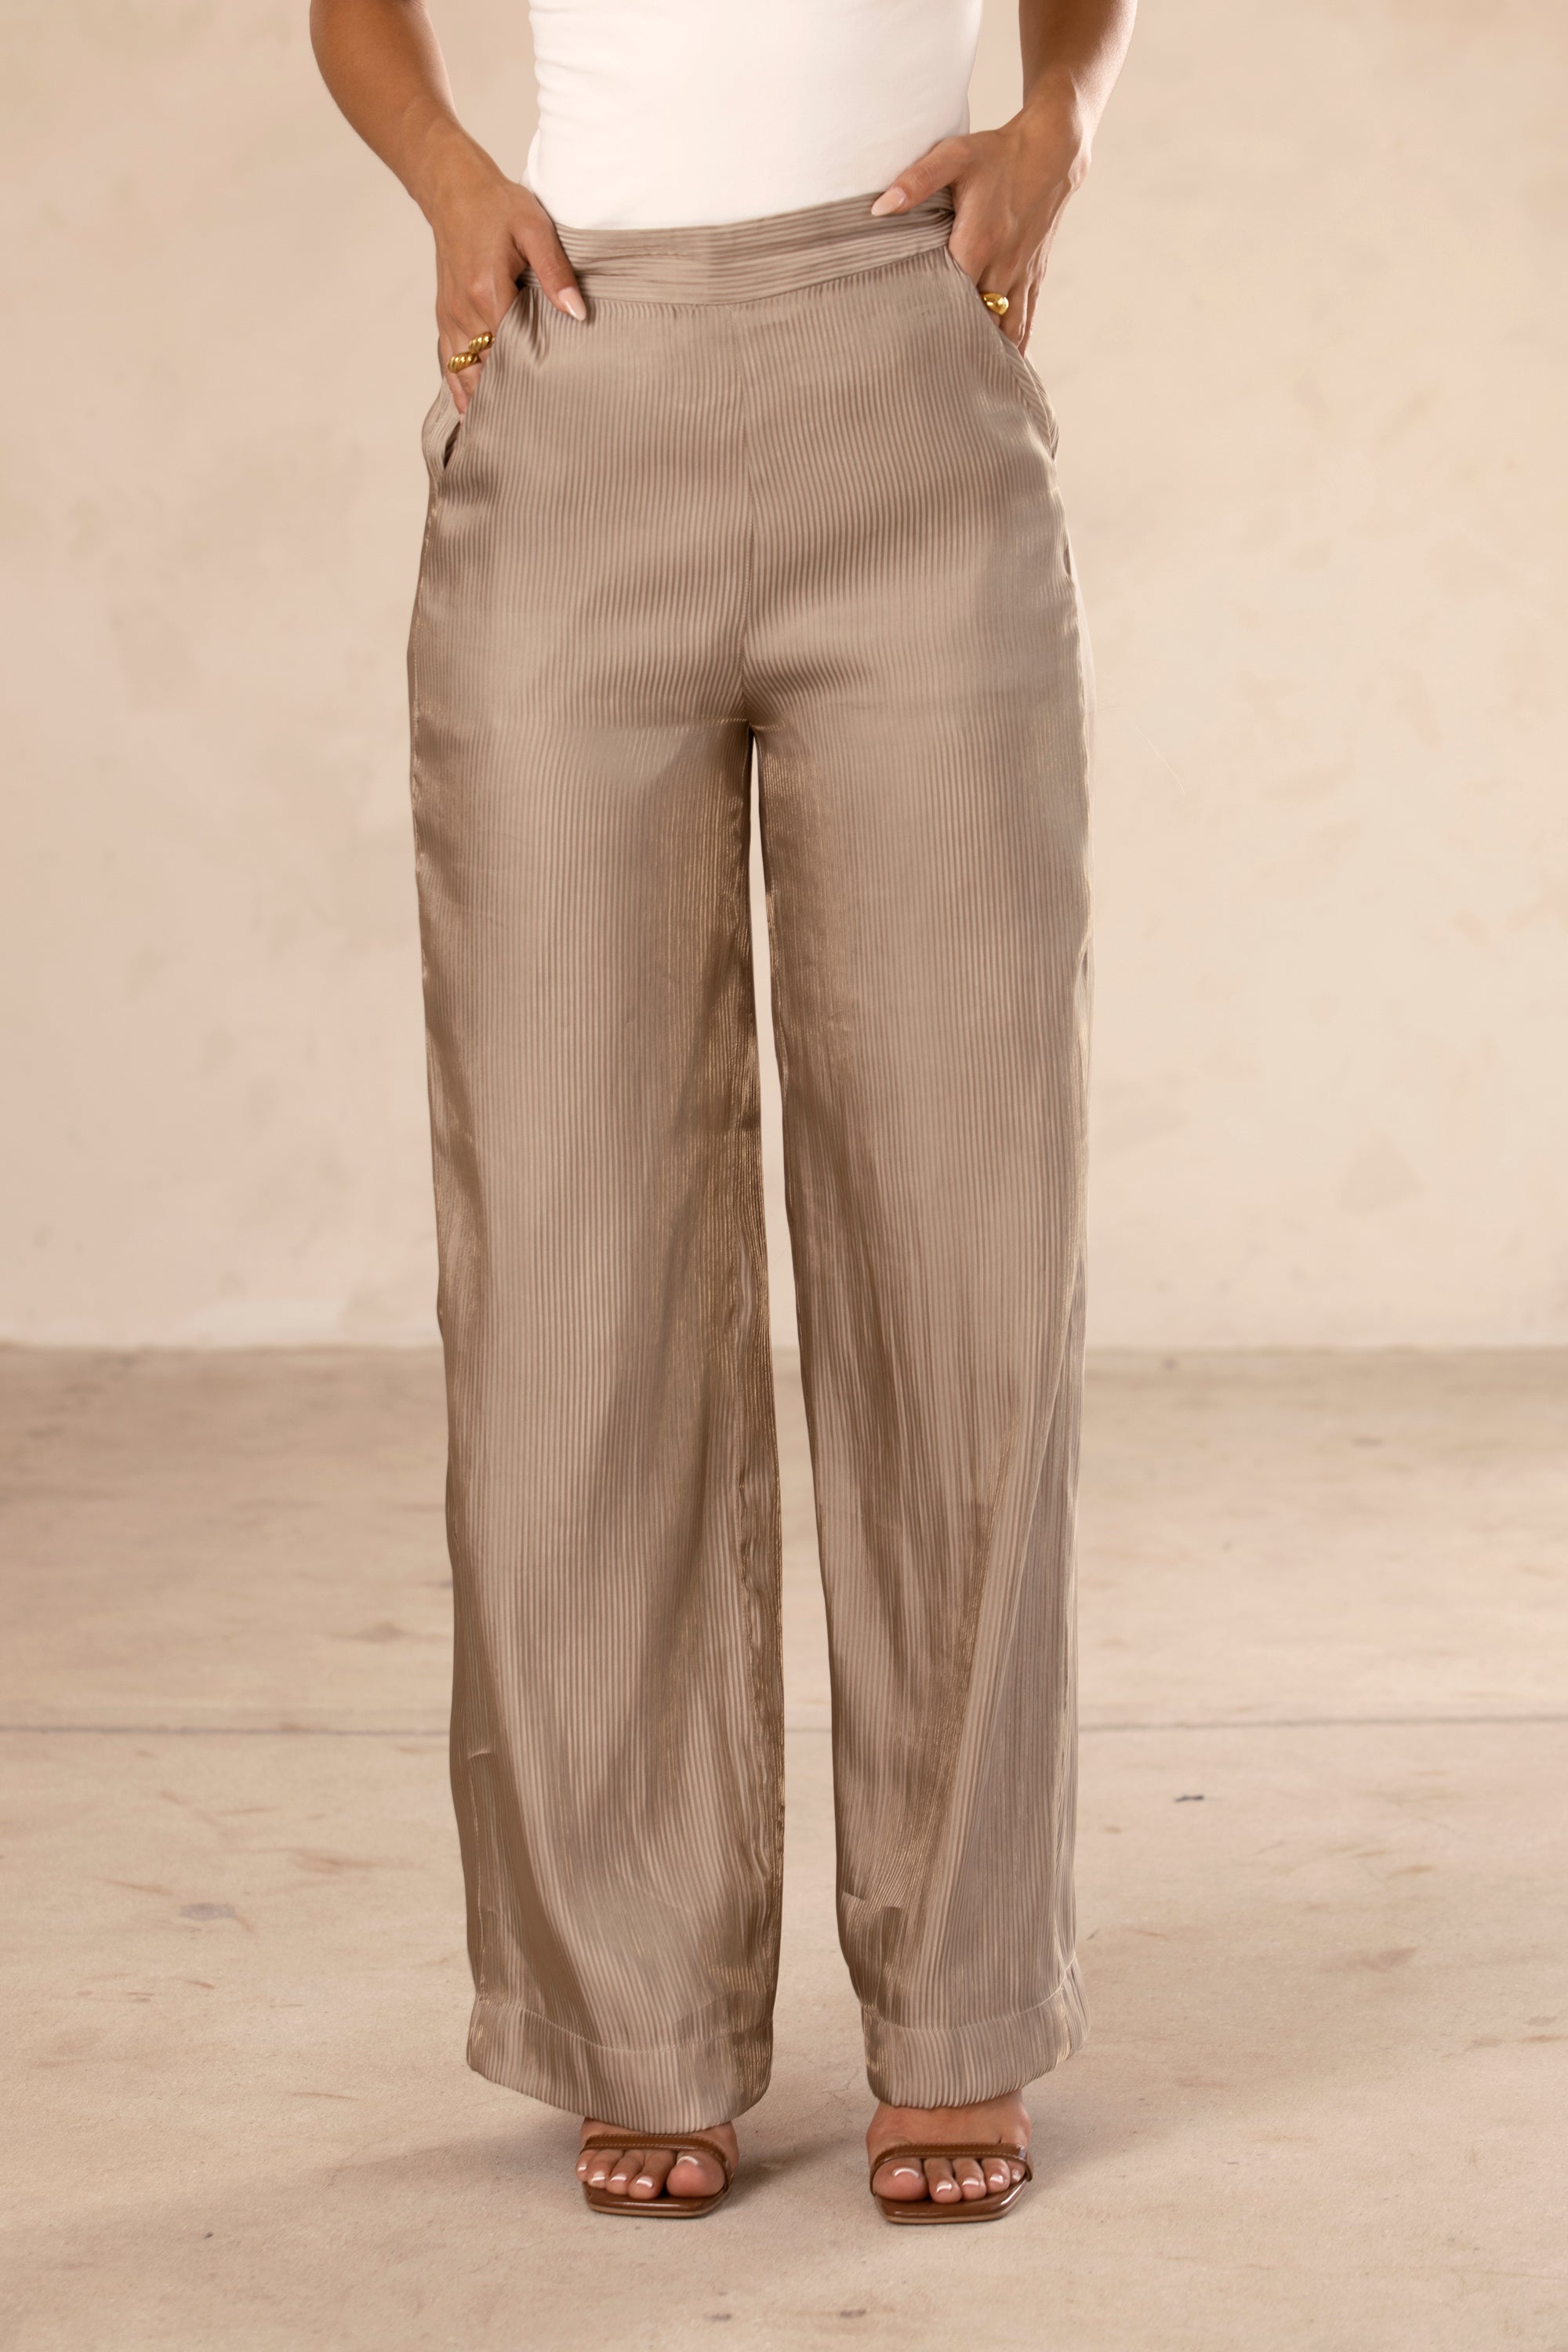 Zara Lilac Pleated Wide Leg Palazzo Trousers Pants Size XS | eBay